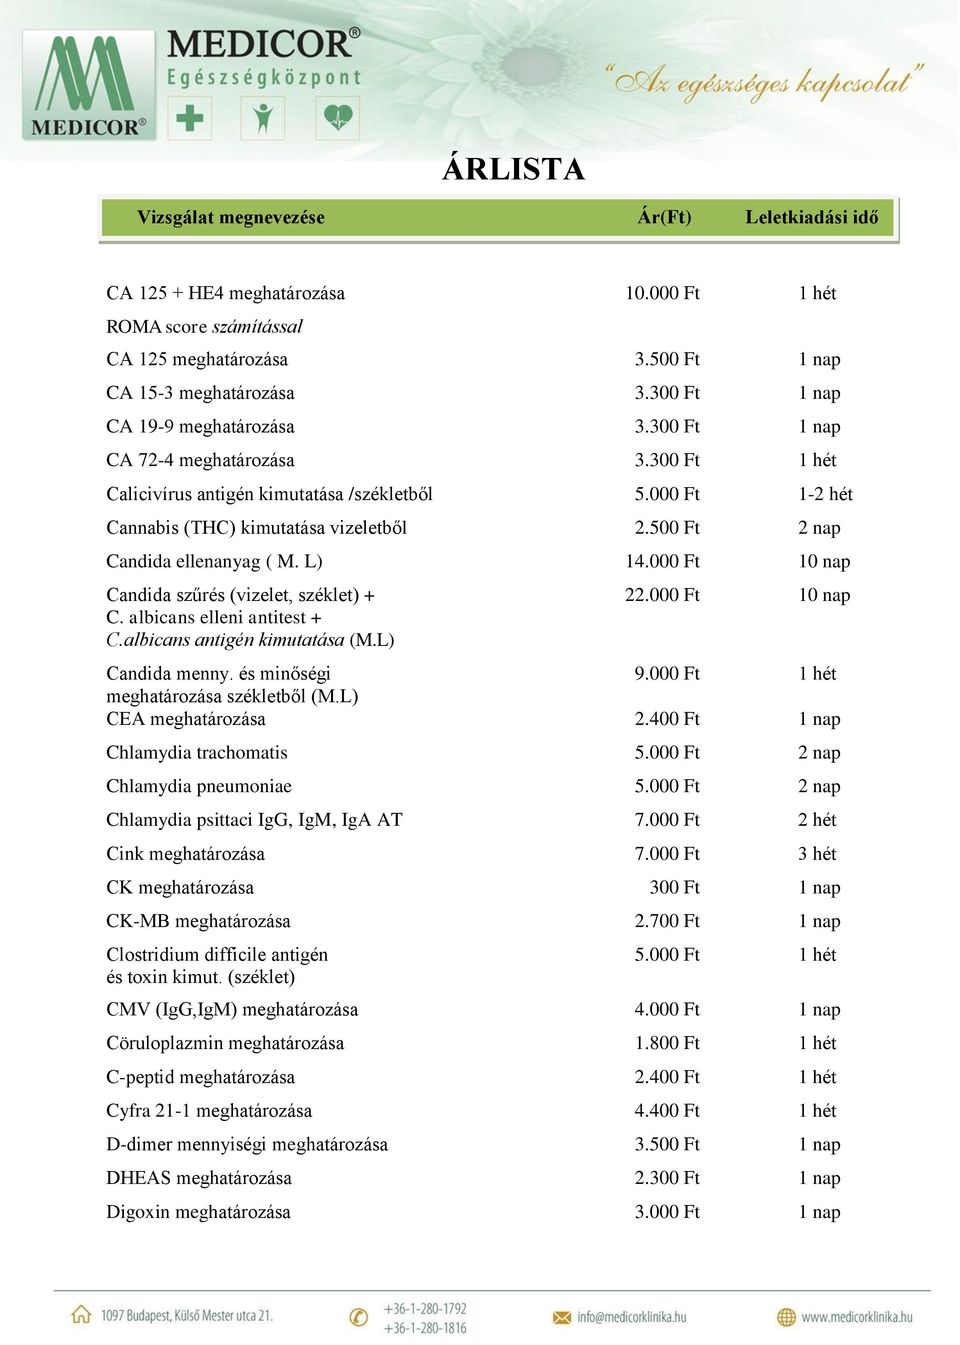 000 Ft 10 nap Candida szűrés (vizelet, széklet) + 22.000 Ft 10 nap C. albicans elleni antitest + C.albicans antigén kimutatása (M.L) Candida menny. és minőségi 9.